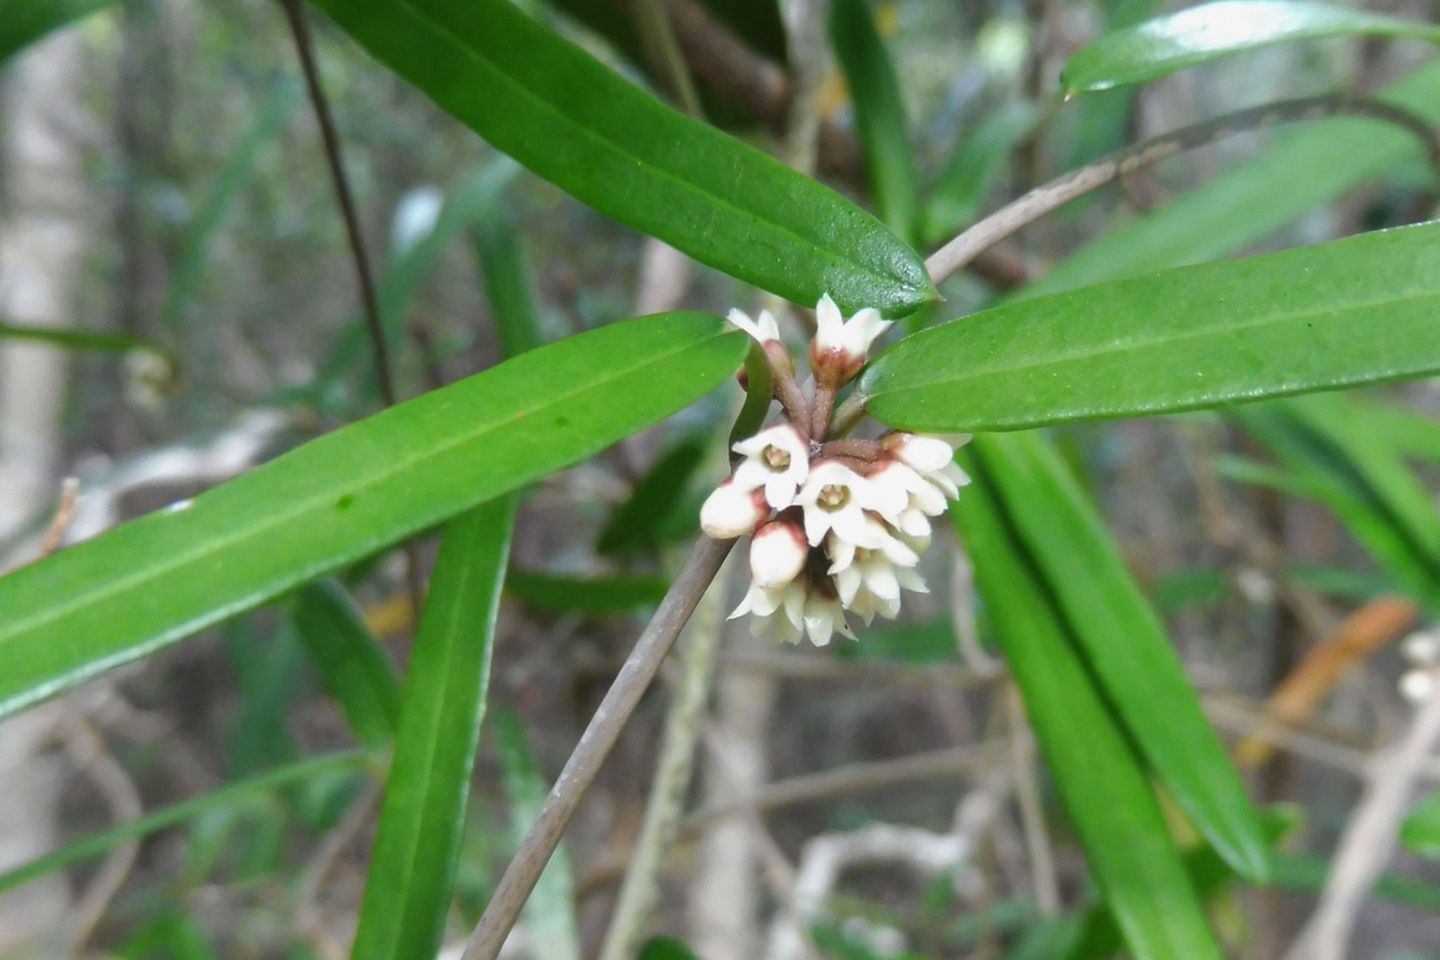 Leichhardtia weari in ihrem ursprünglichen Lebensraum auf der Insel Yandé